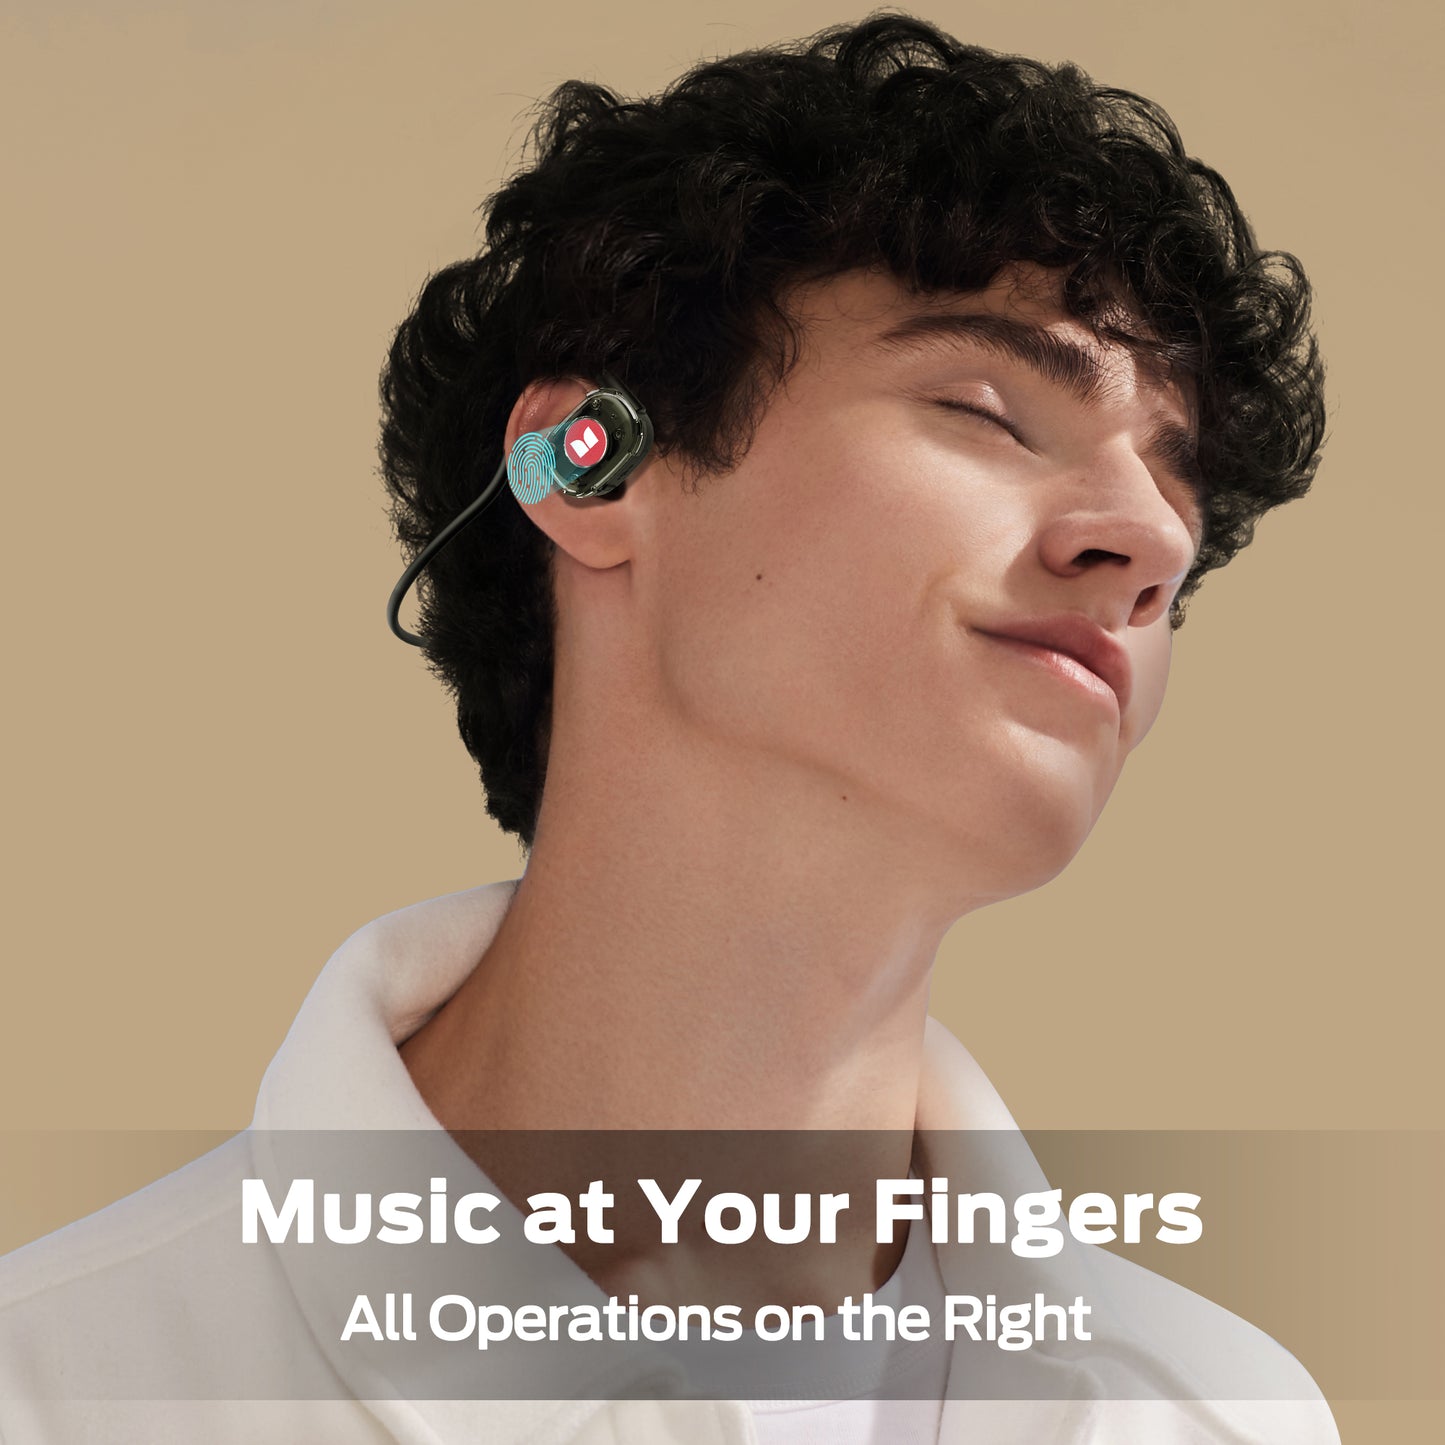 Monster Open-Ear Lite+ Air Conduction Bluetooth Headphones